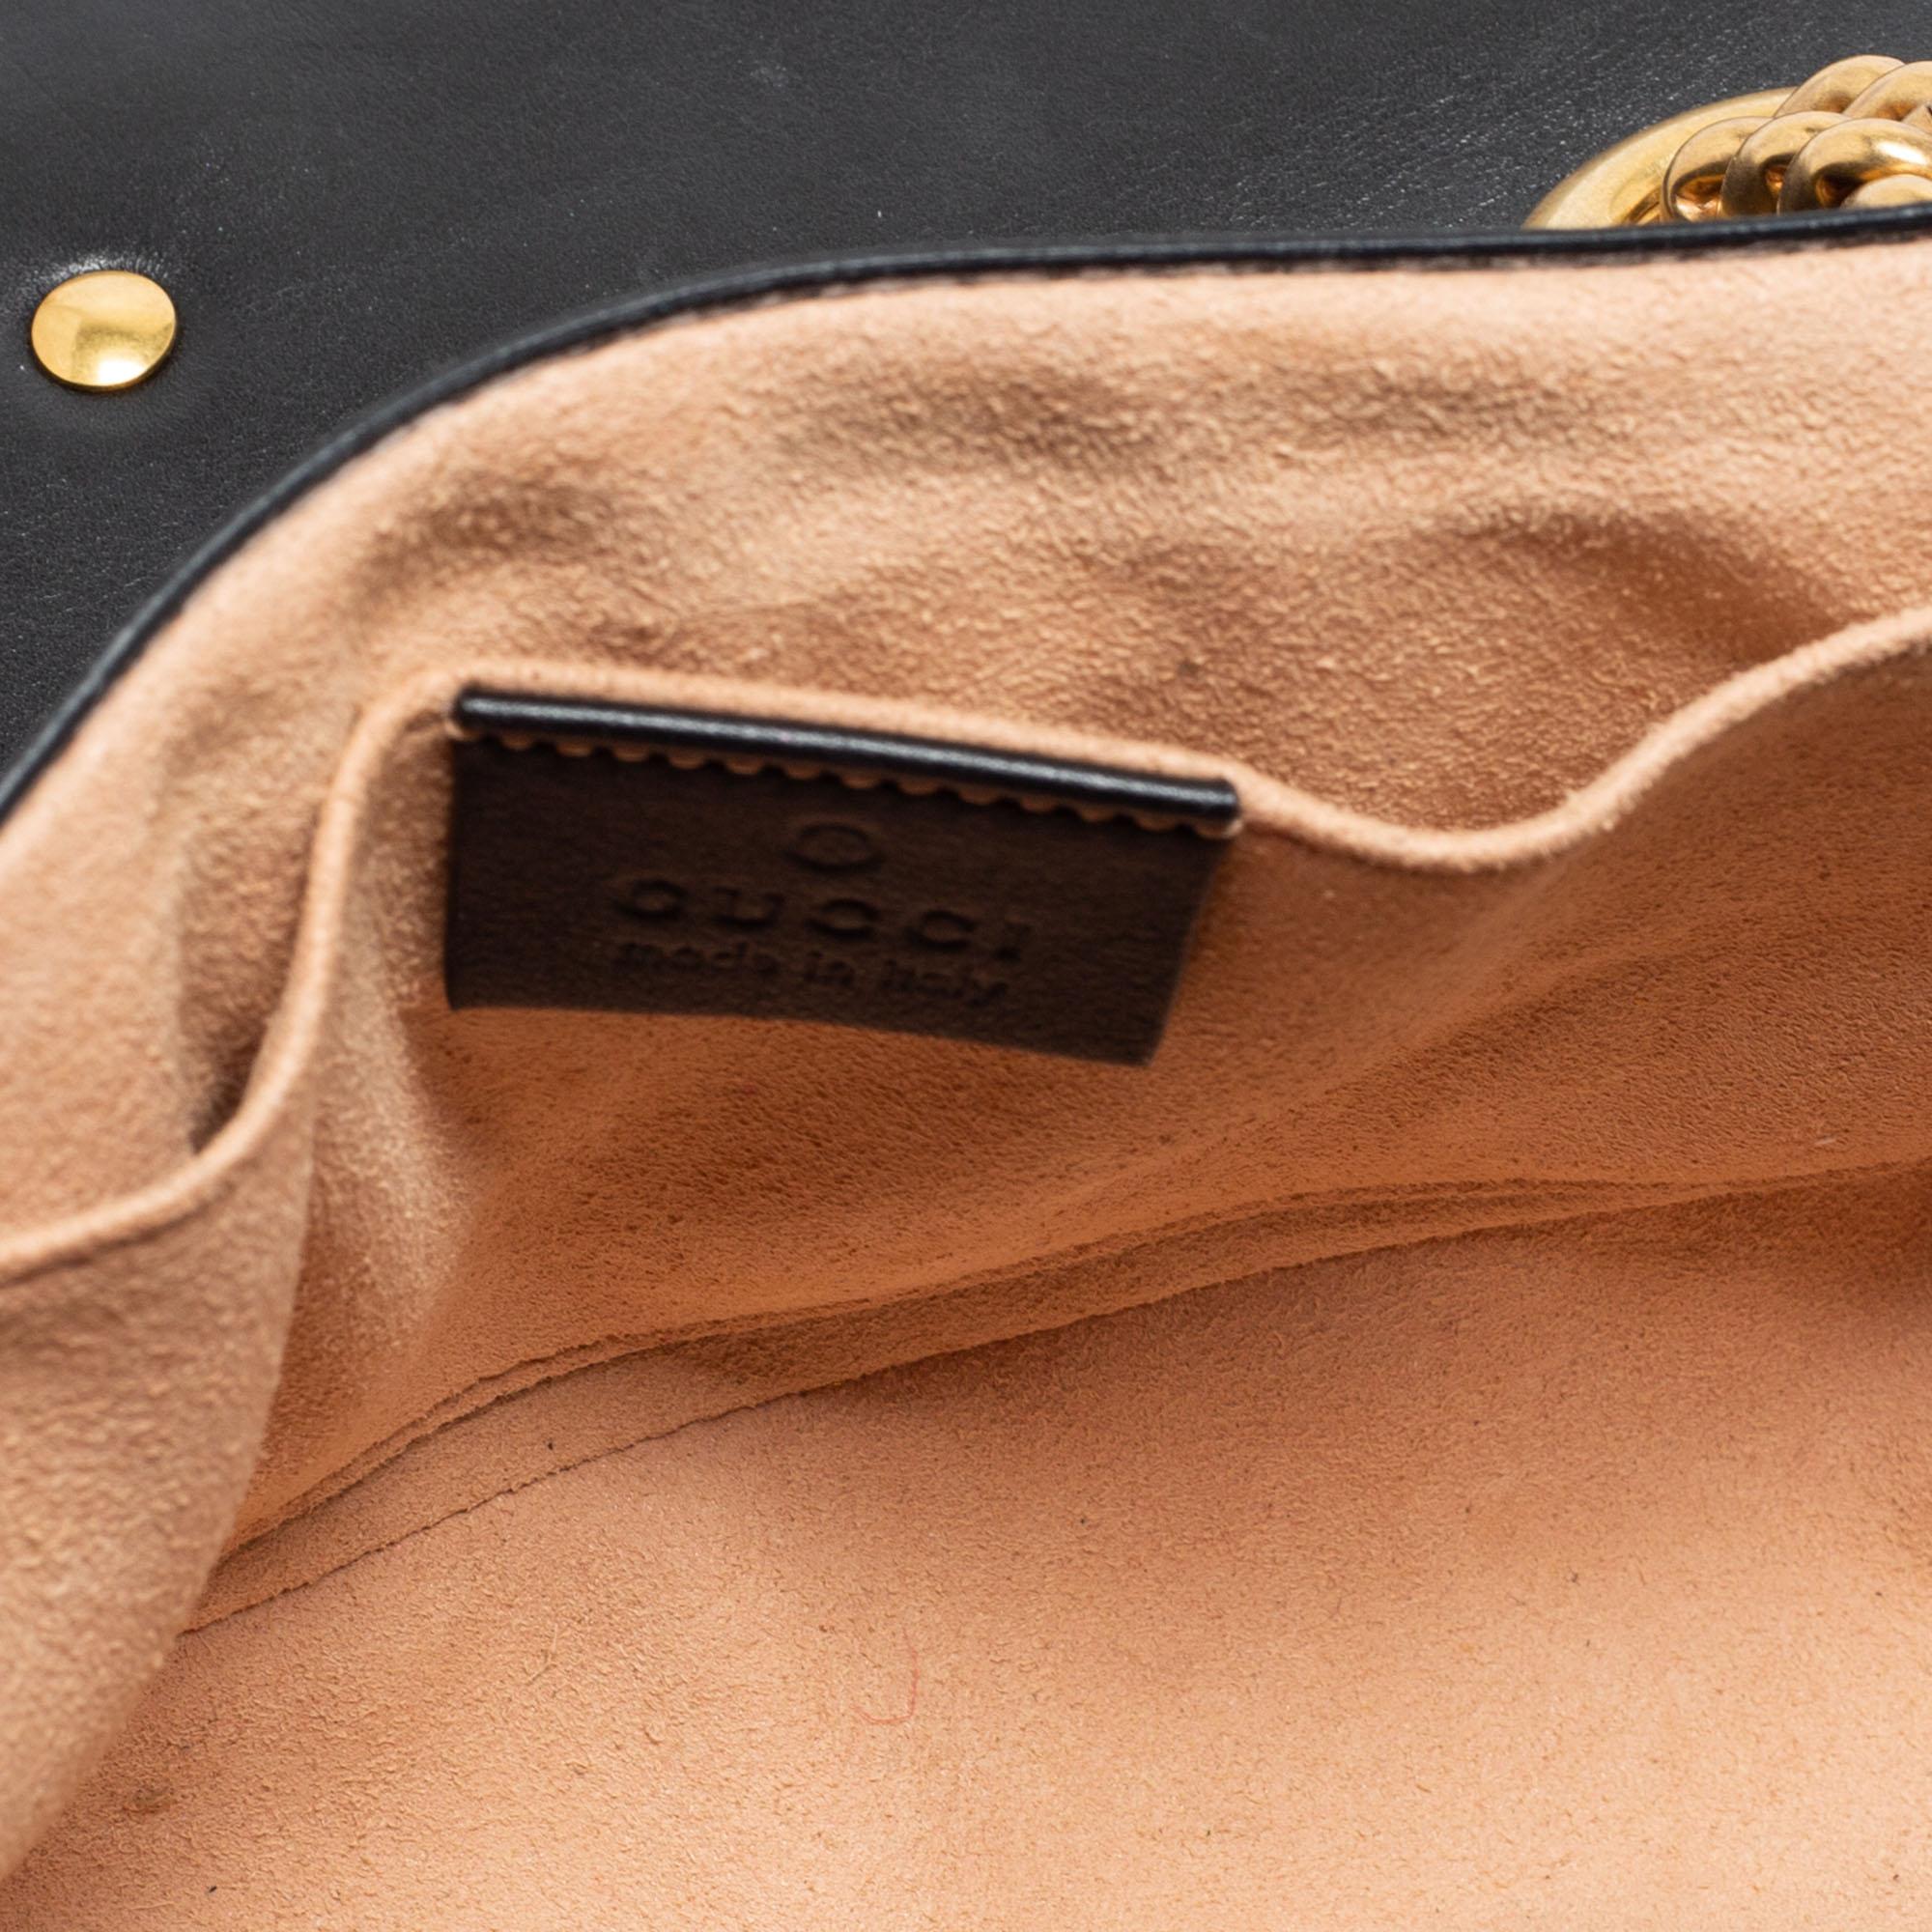 Gucci Black Matelassé Leather Mini GG Marmont Shoulder Bag 2